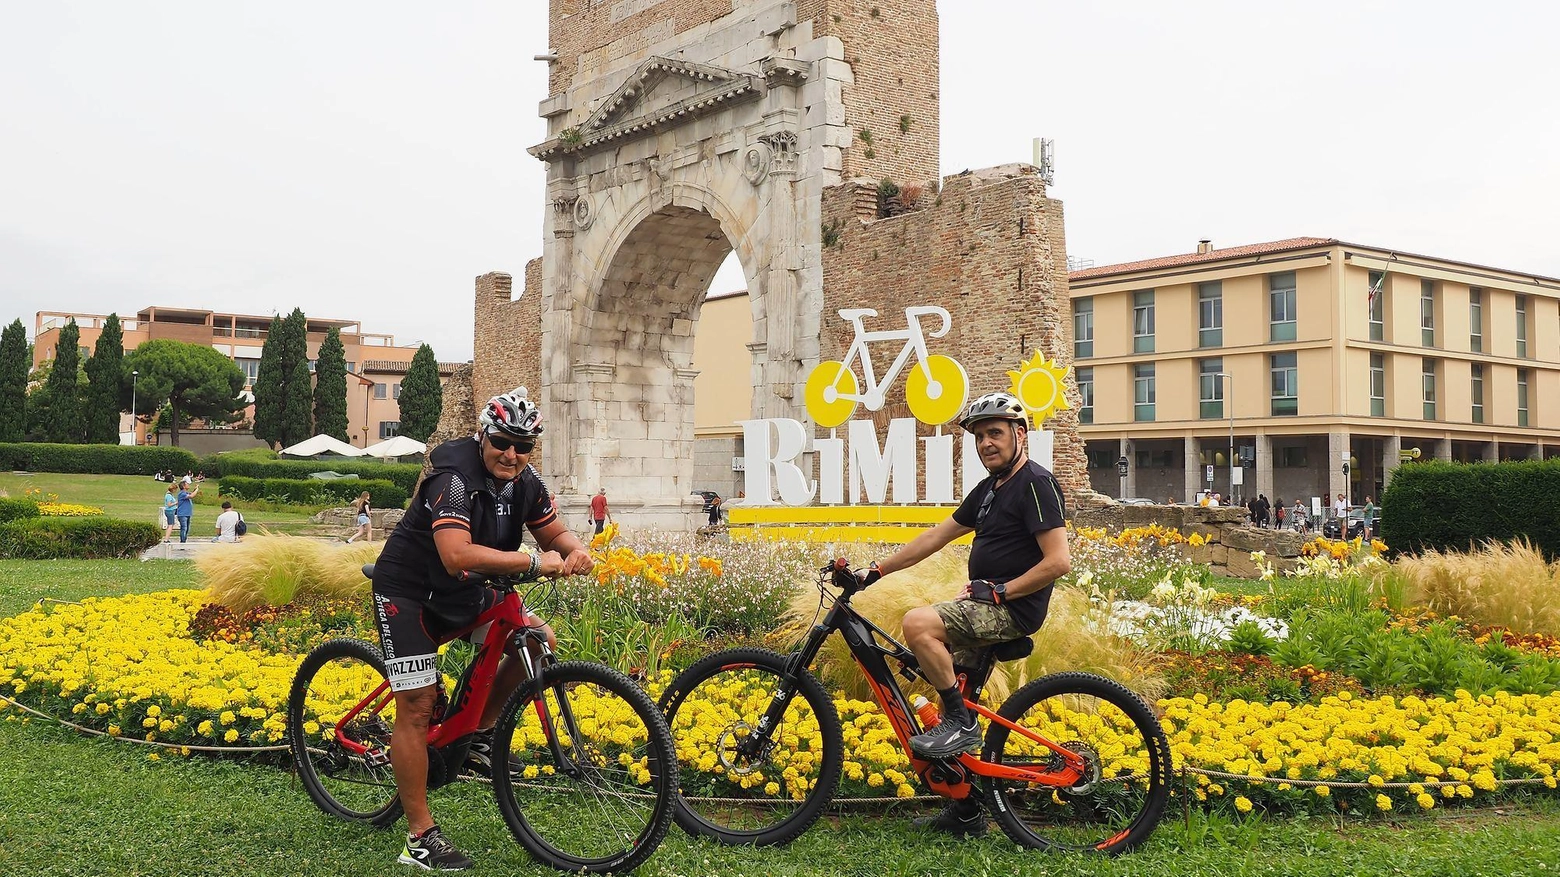 Sale la febbre gialla . Da tutto il mondo a Rimini per il Tour de France. La città prepara la festa